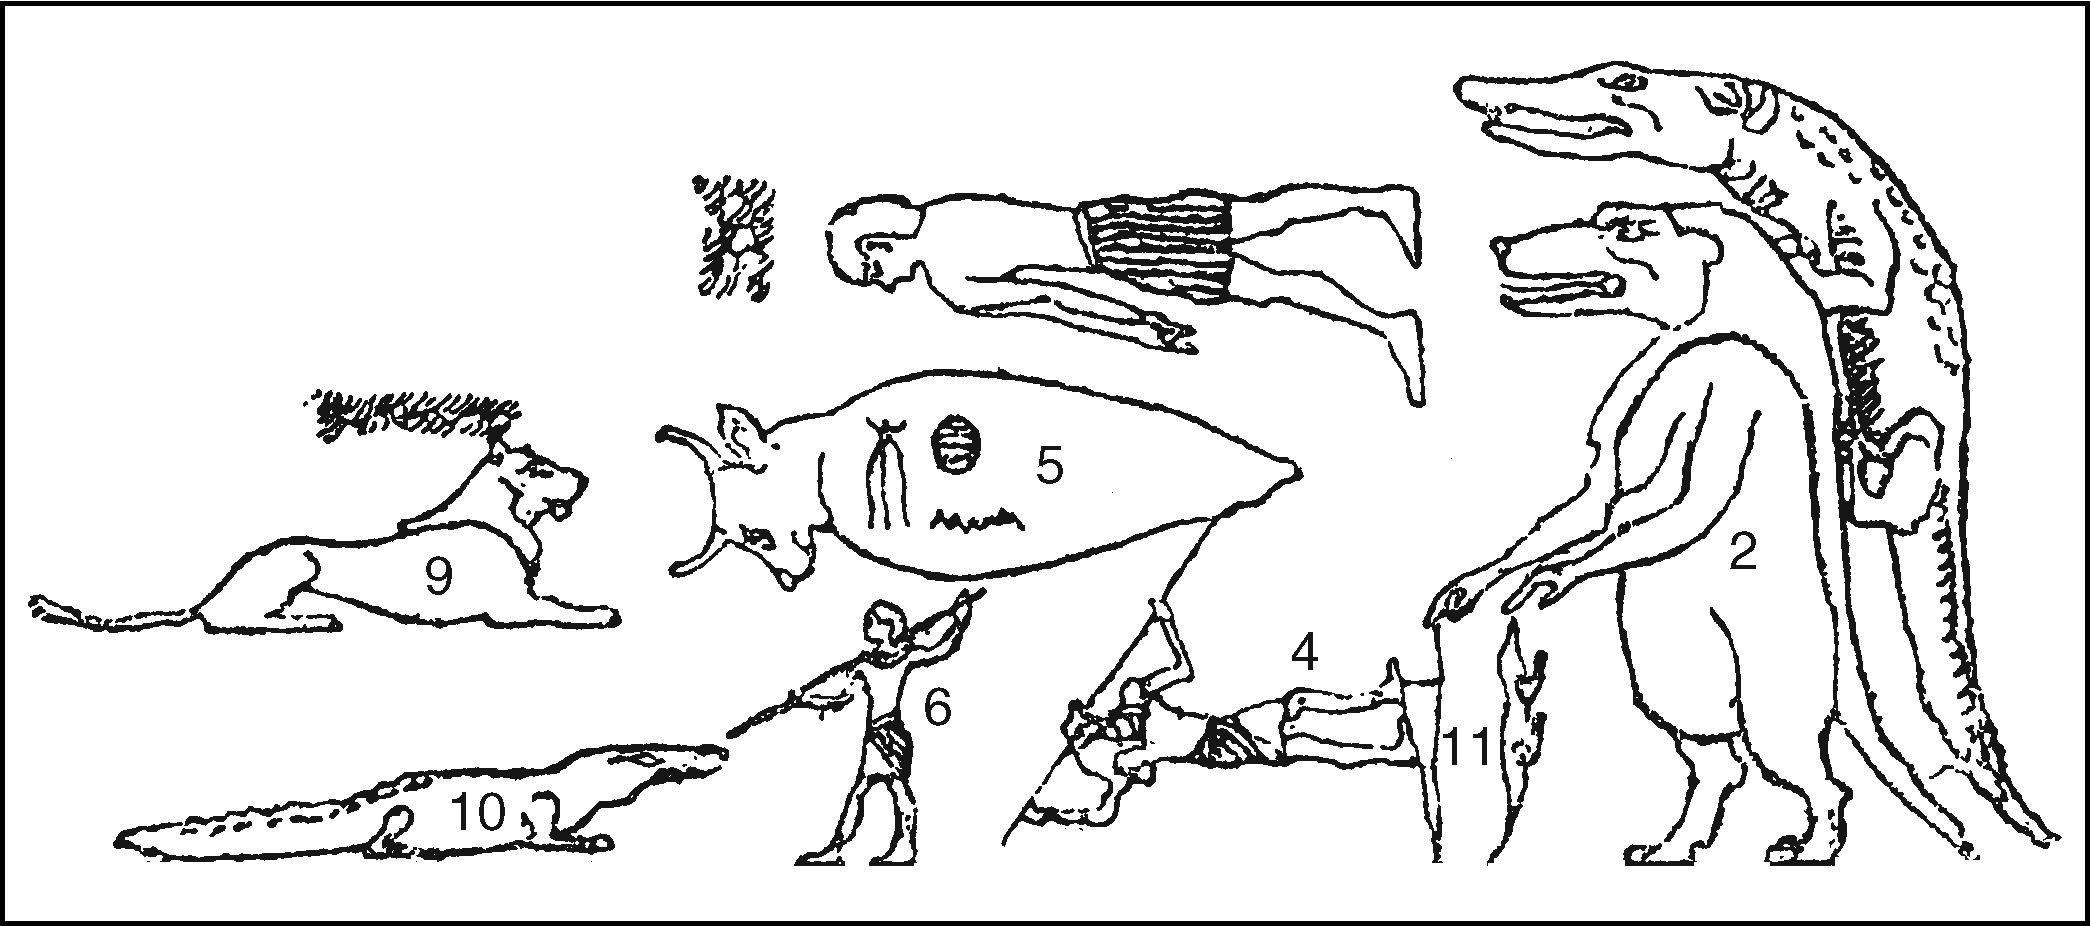 Иллюстрация из фиванской гробницы, изображающая связь между крокодилом и бегемотом, Хора, убивающего крокодила, и созвездие Бедра